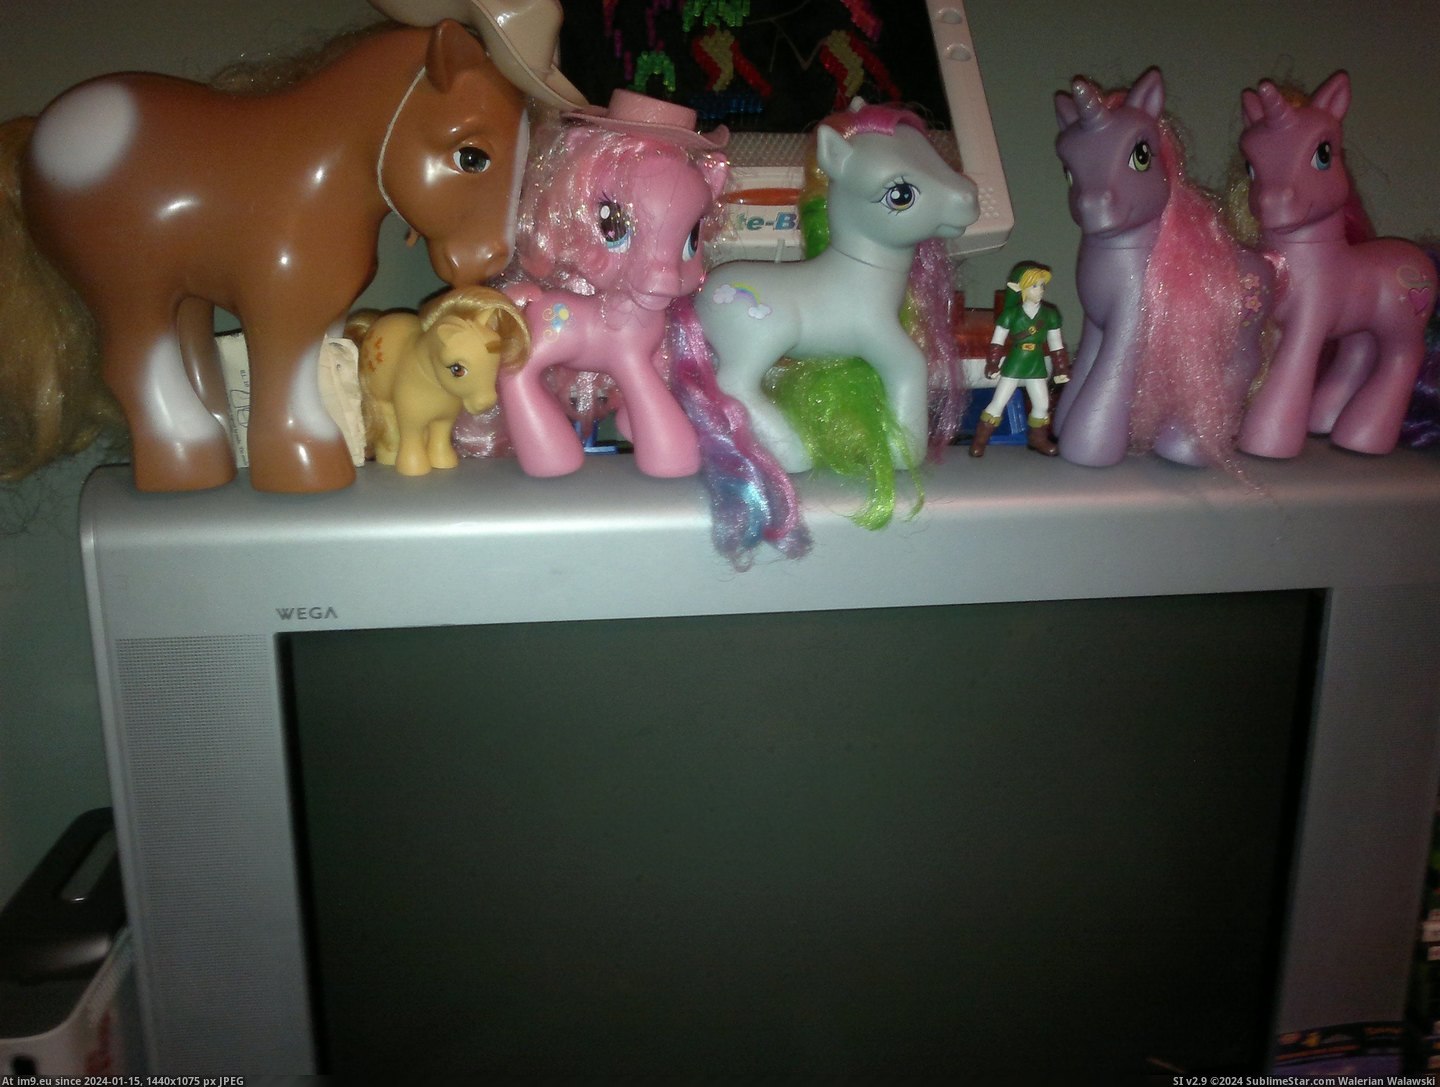  #Ponies  Ponies 2 Pic. (Image of album Jennifer))